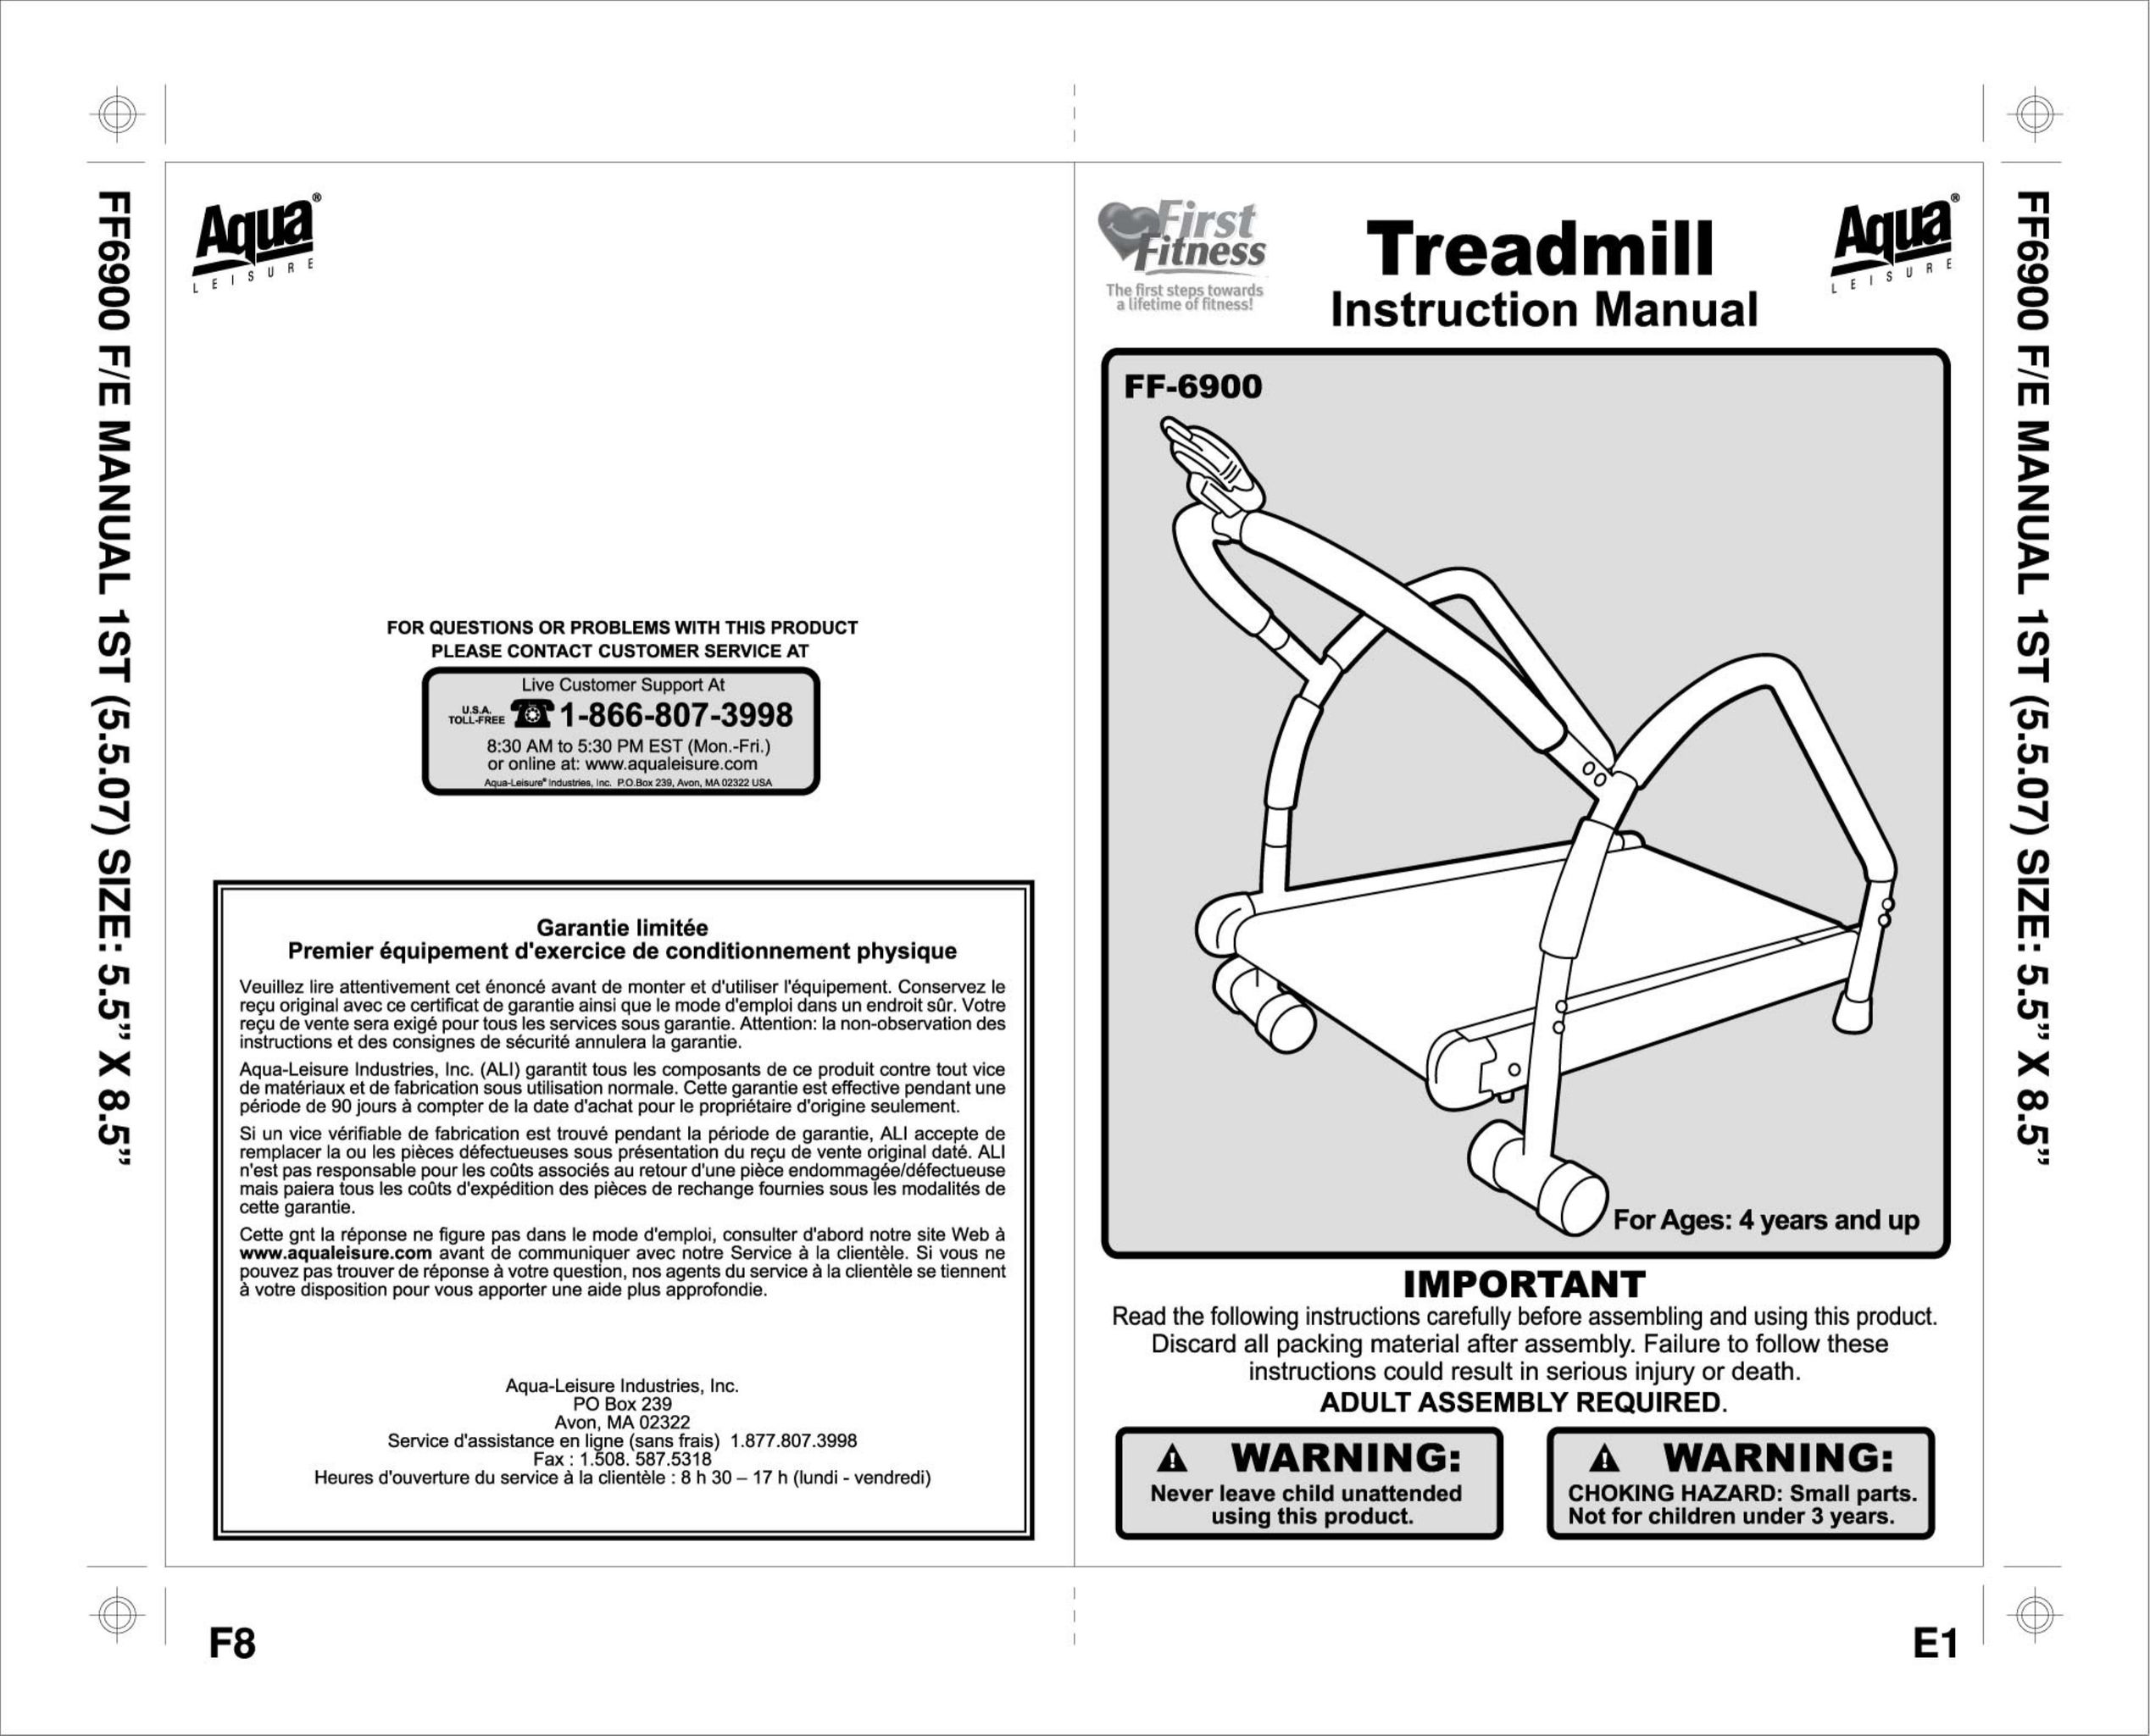 Aqua Leisure FF-6900 Treadmill User Manual